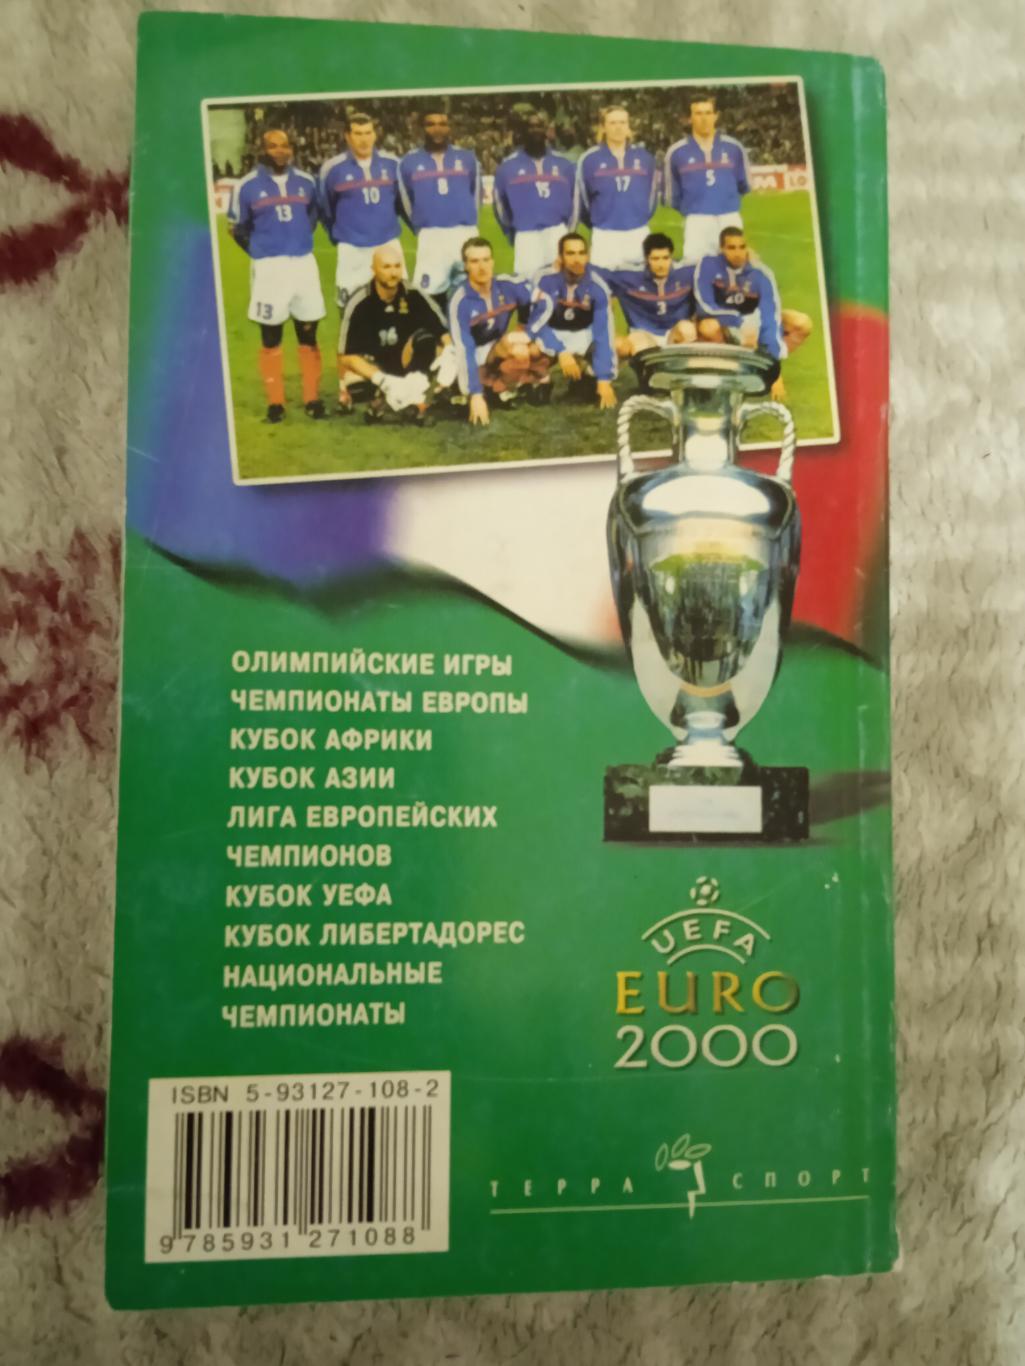 А.Савин.Мировой футбол 2000-2001.Москва.Терра-Спорт 2001 г. 1